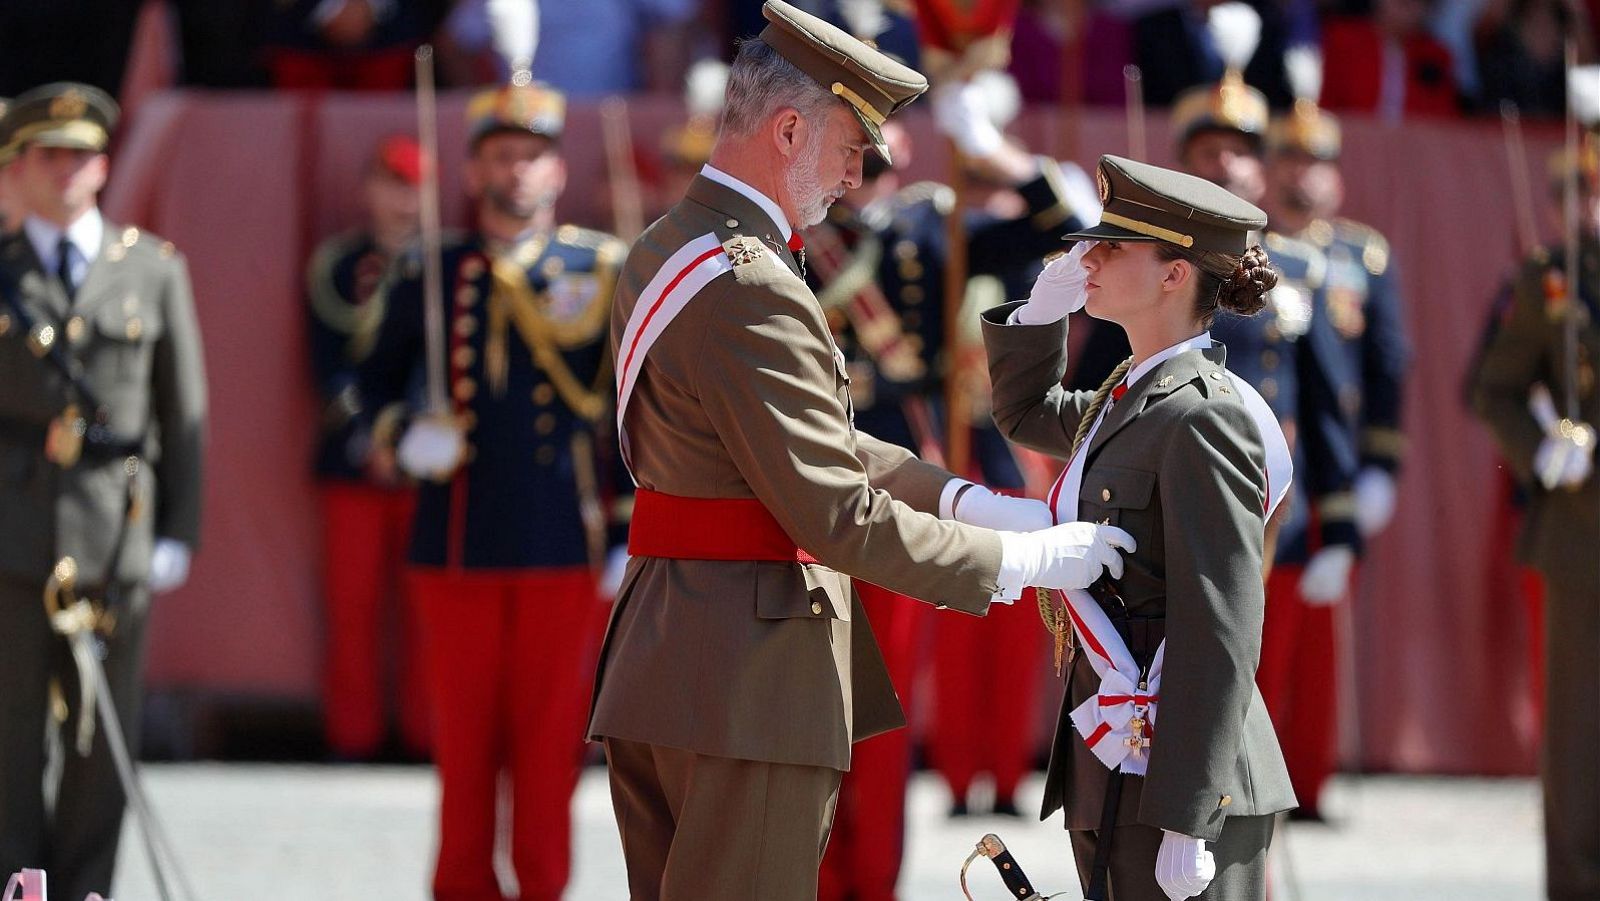 La princesa Leonor recibe acaba su formación militar en Zaragoza